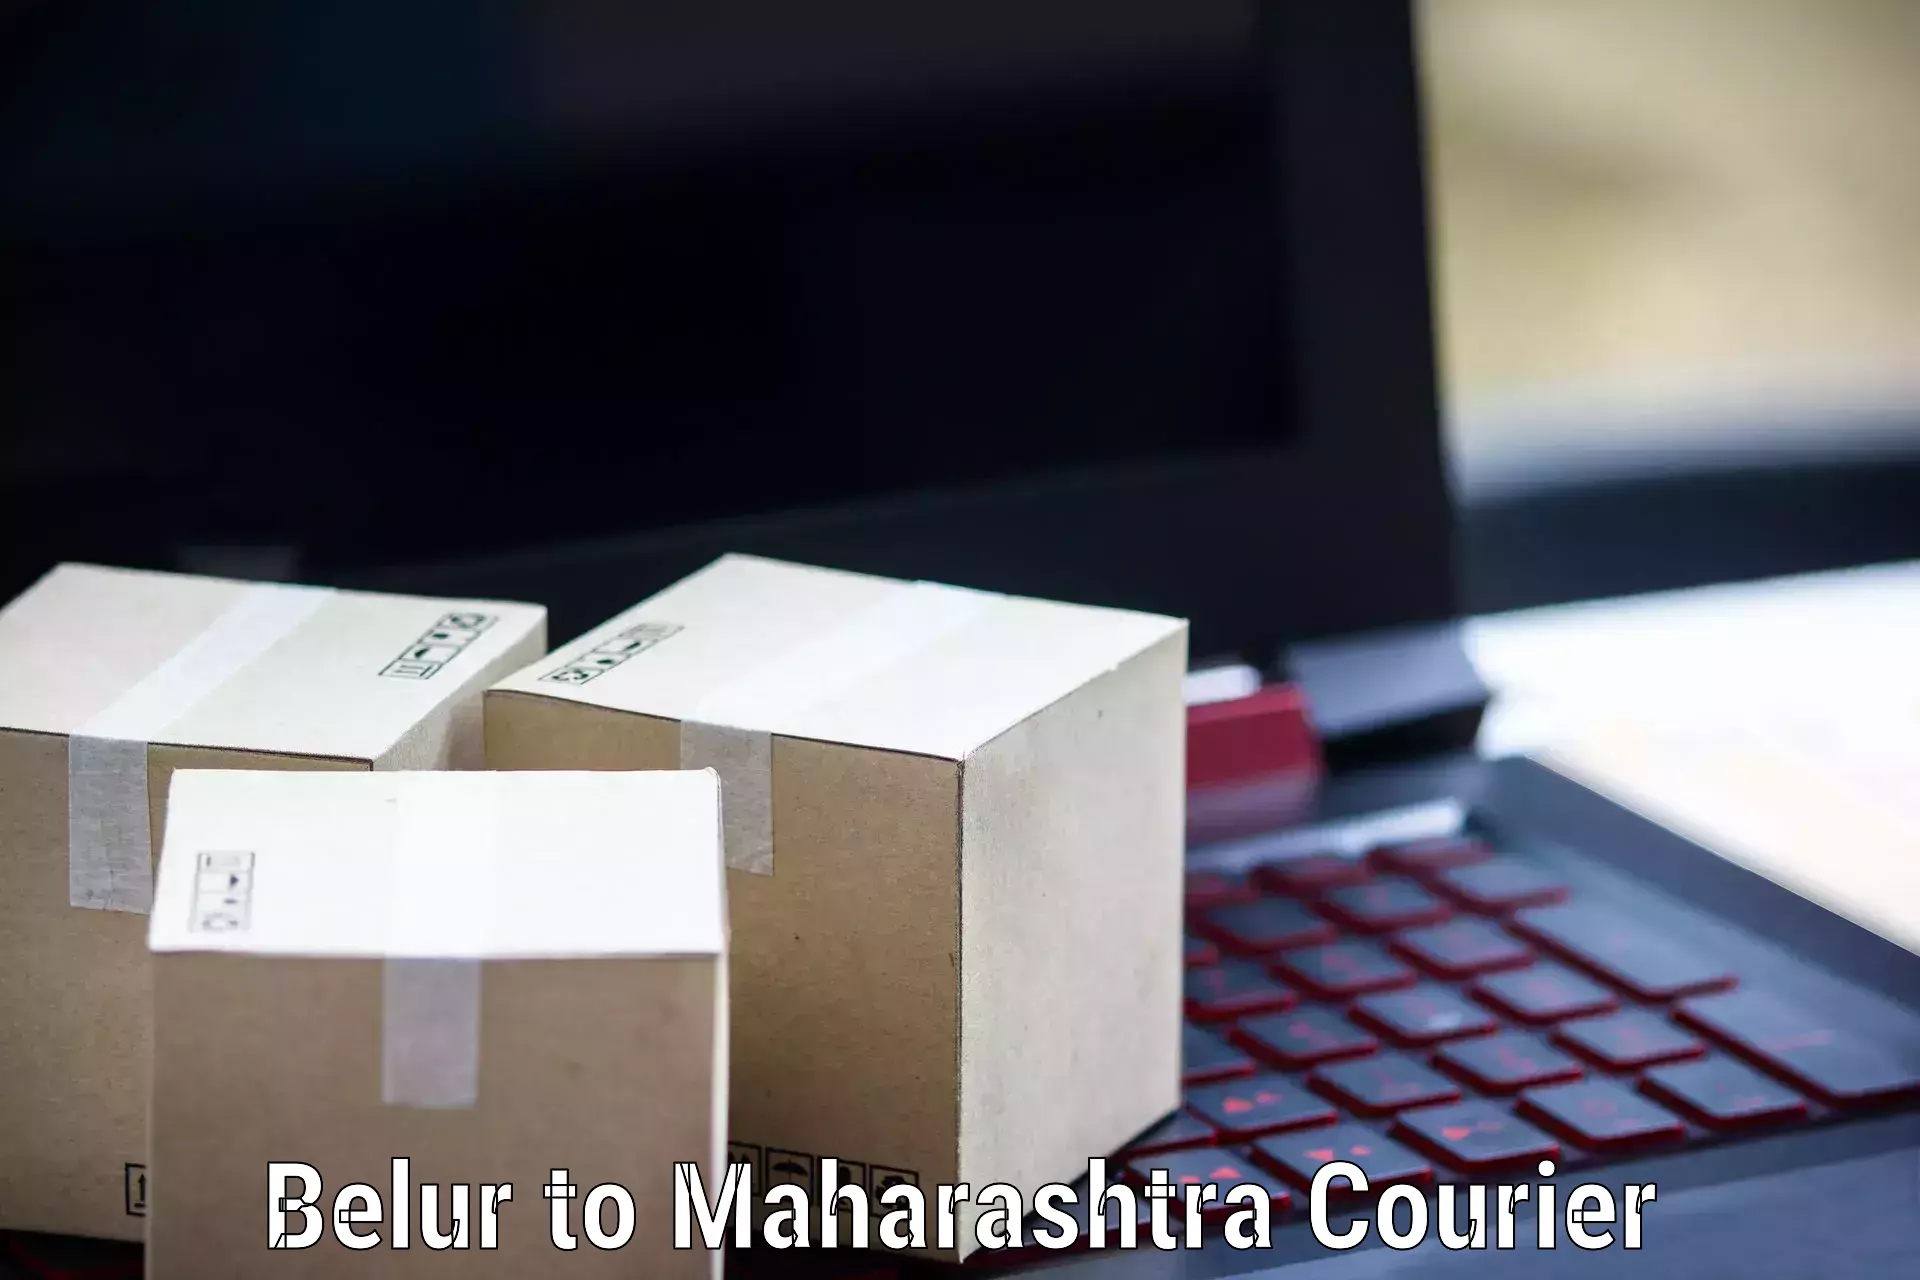 Supply chain delivery Belur to Walchandnagar